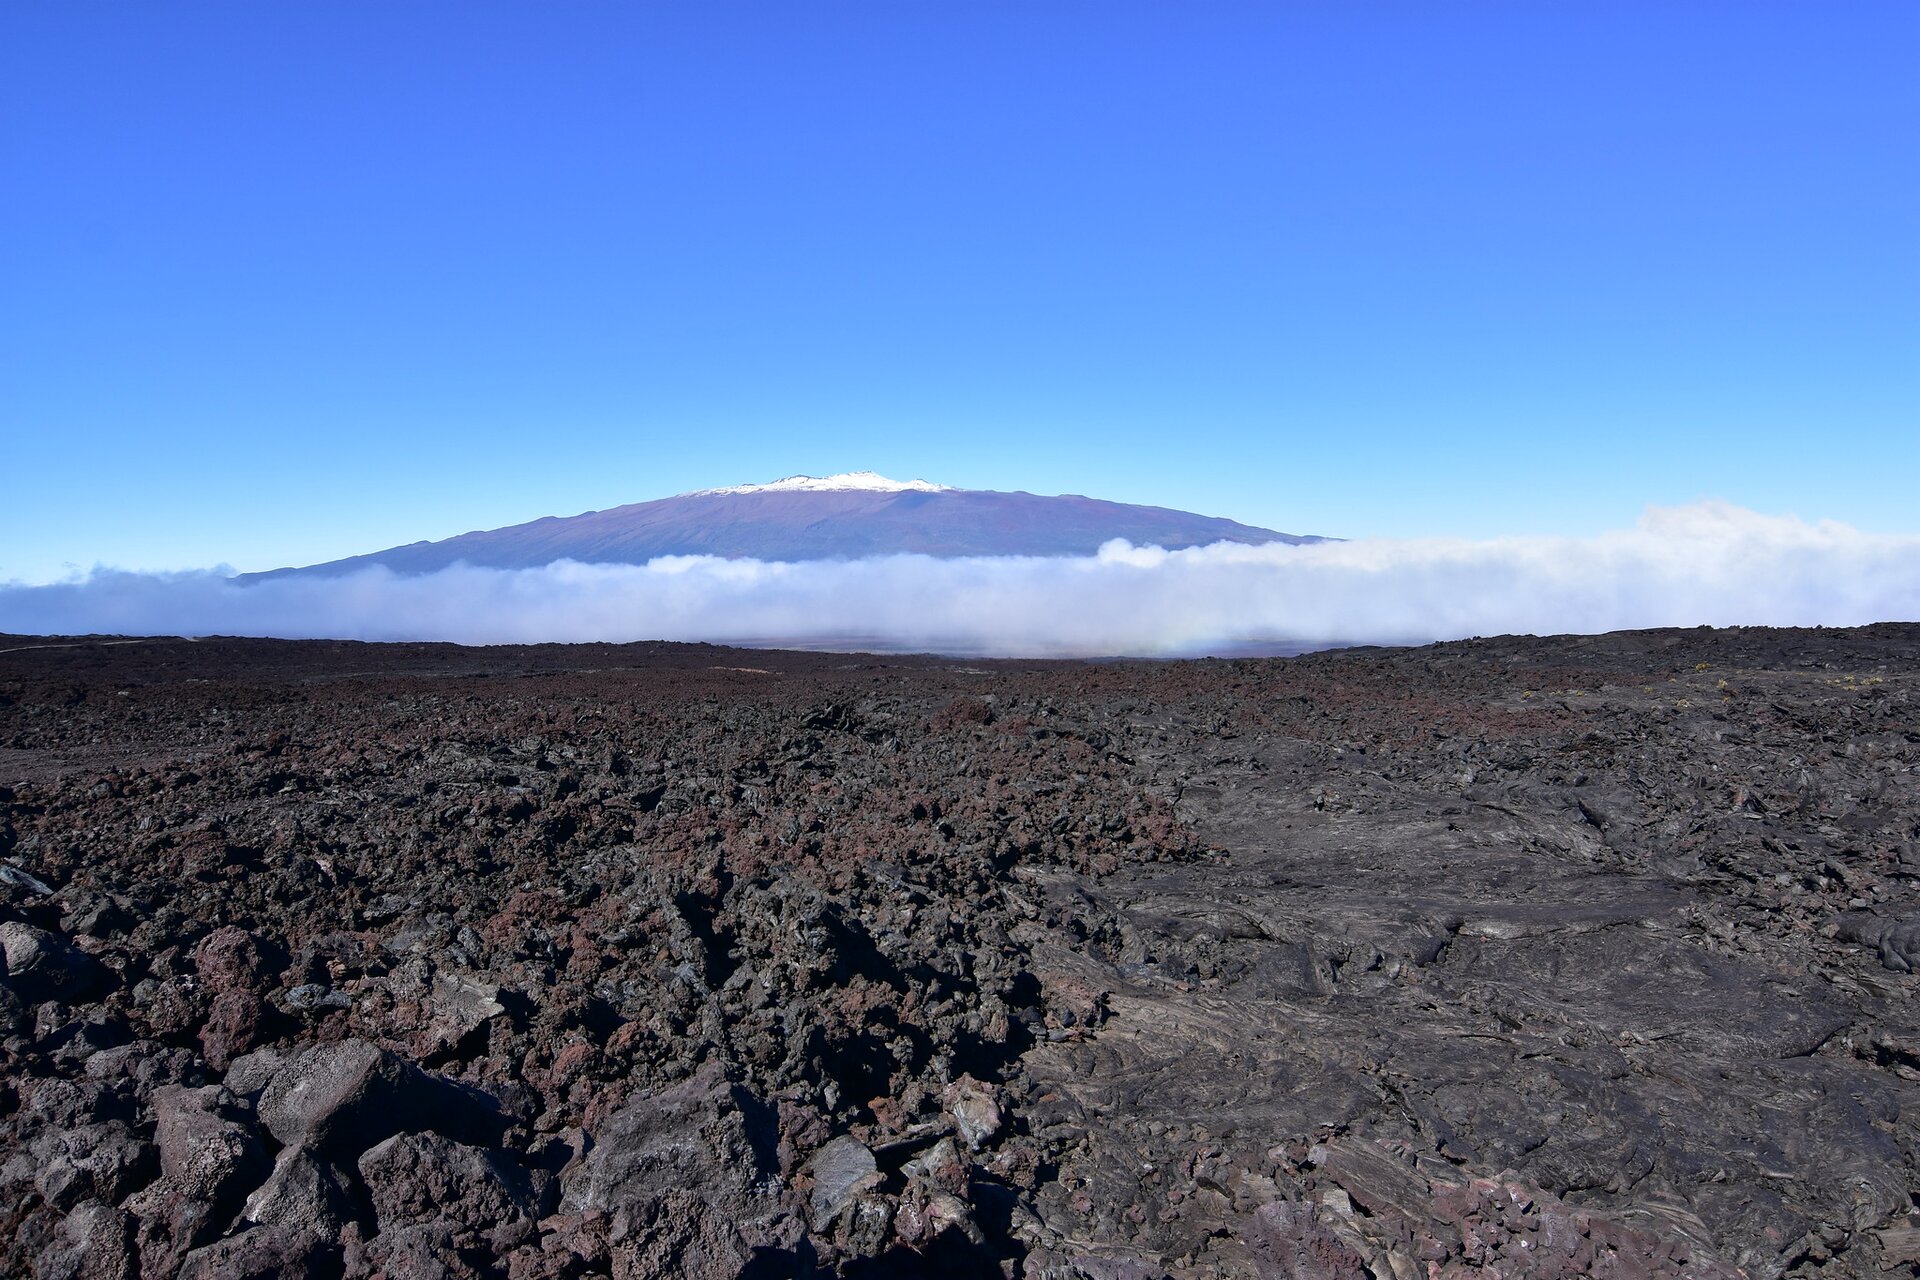 Na zdjęciu w oddali jest wulkan. Tylko szczyt jest ośnieżony. Na pierwszym planie jest płaski teren pokryty ciemnymi grudami zastygłej lawy. Niebo nad wulkanem jest bezchmurne.  